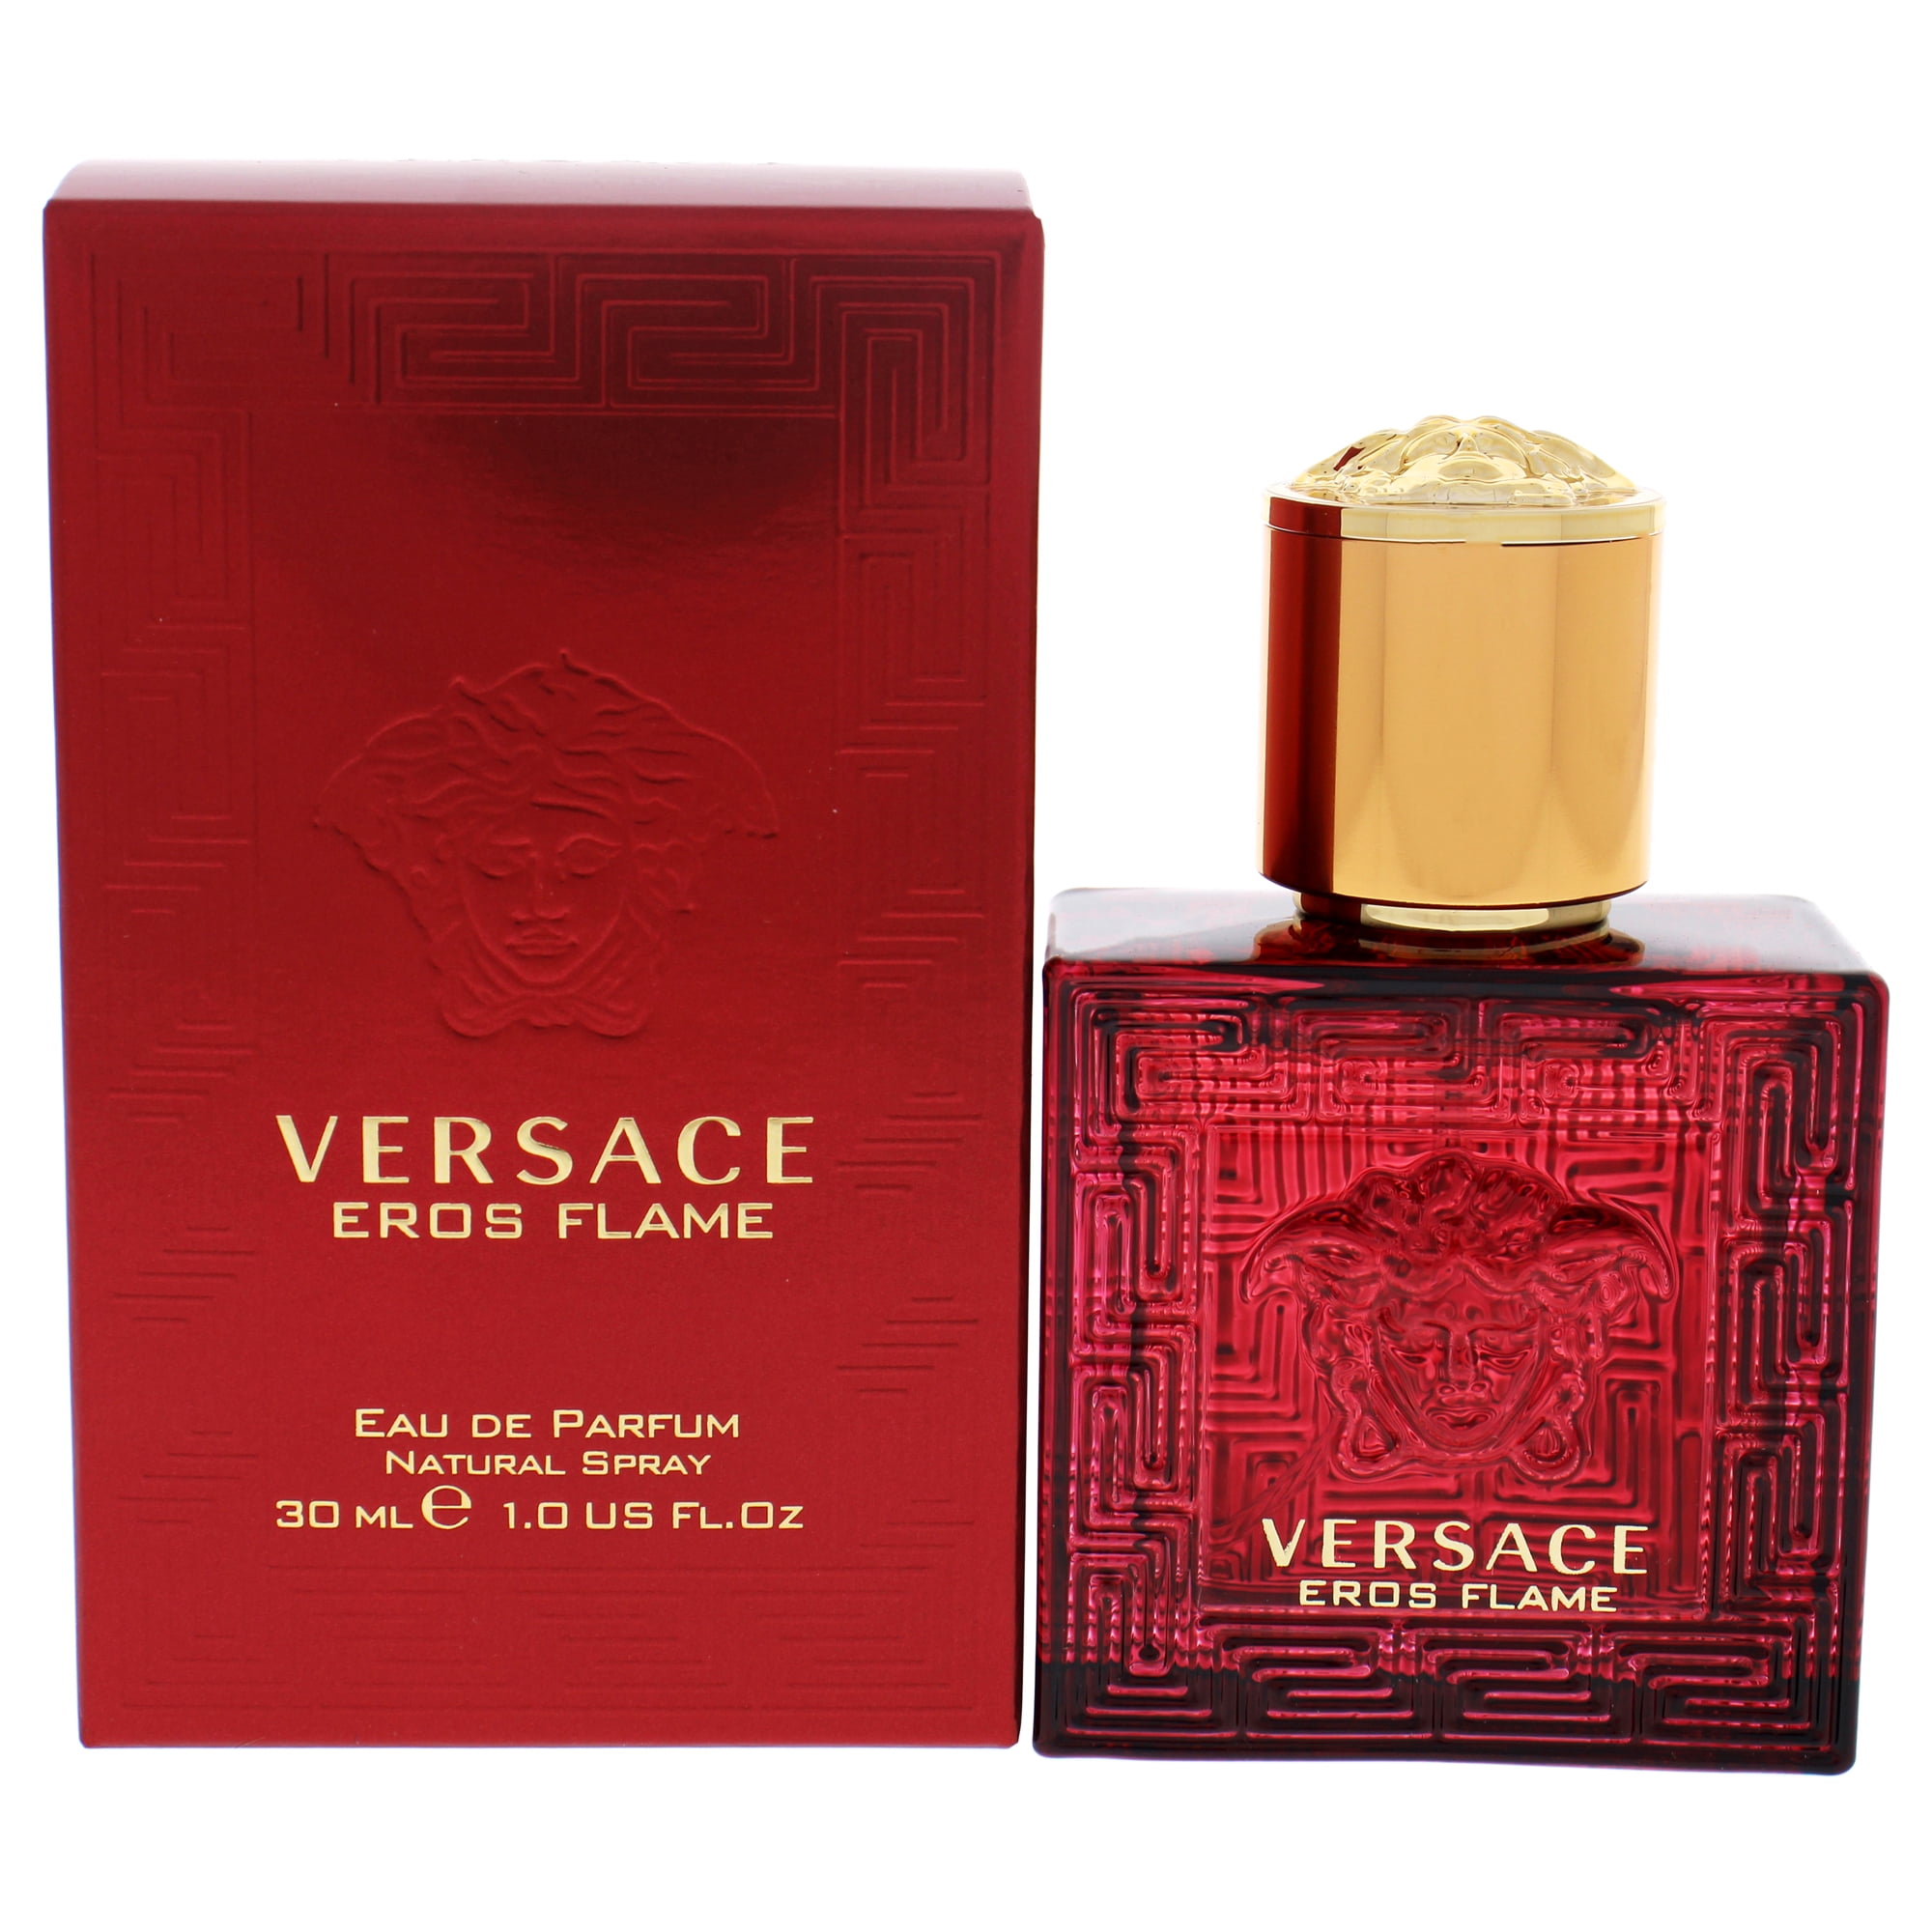 versace eros perfume by versace 1 oz eau de parfum spray